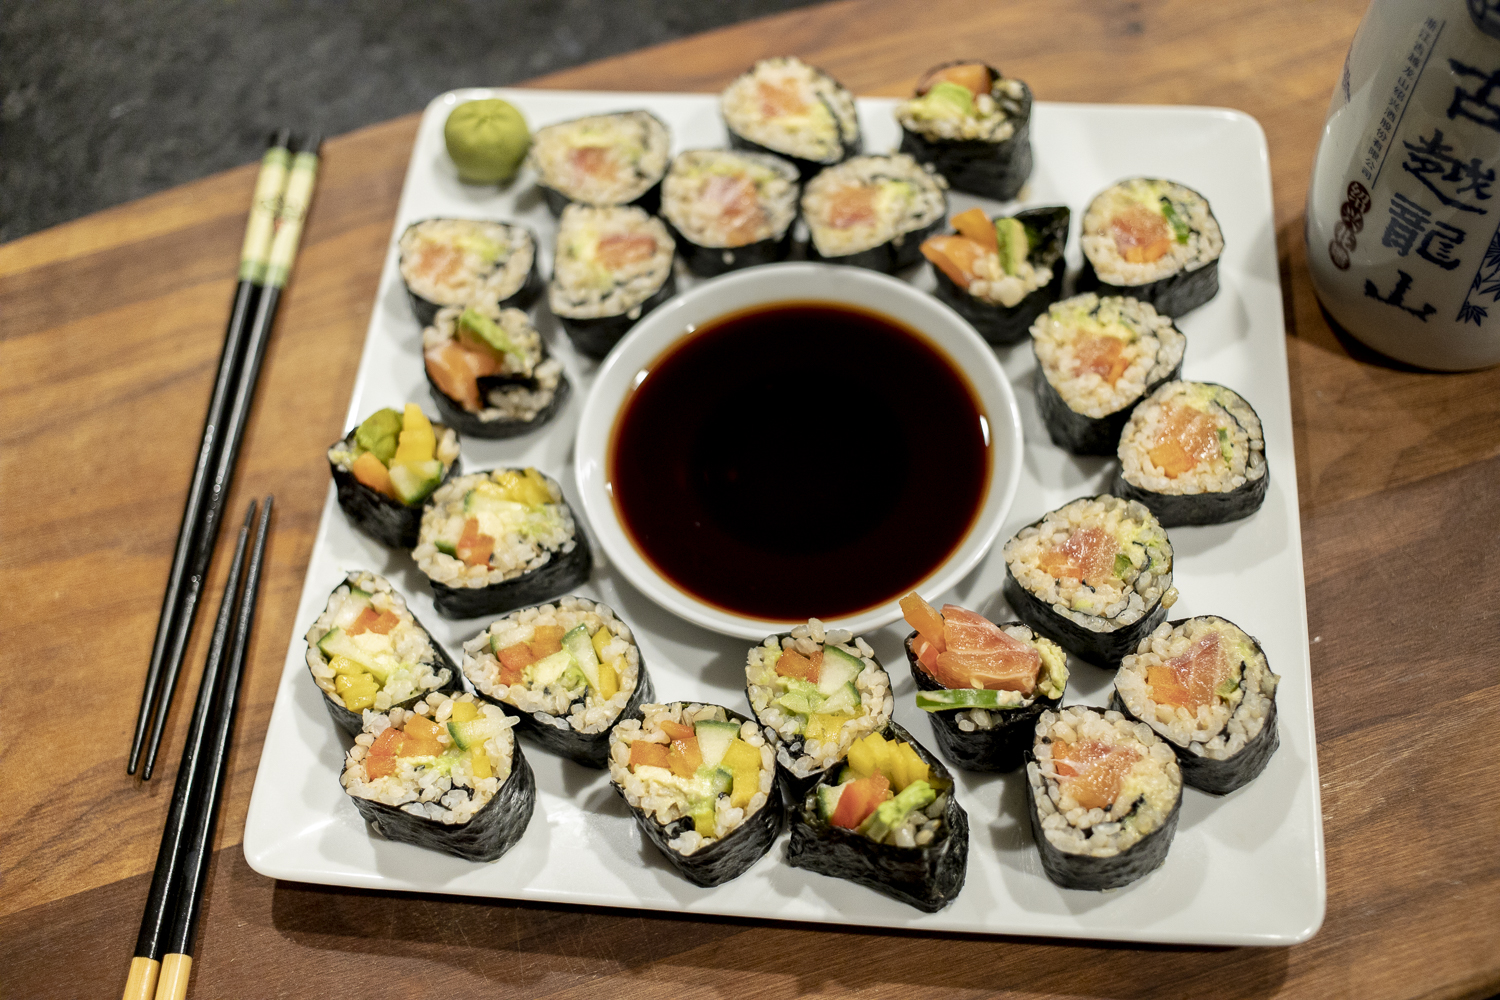 Sushi Making Kit, make your own sushi at home, recipe